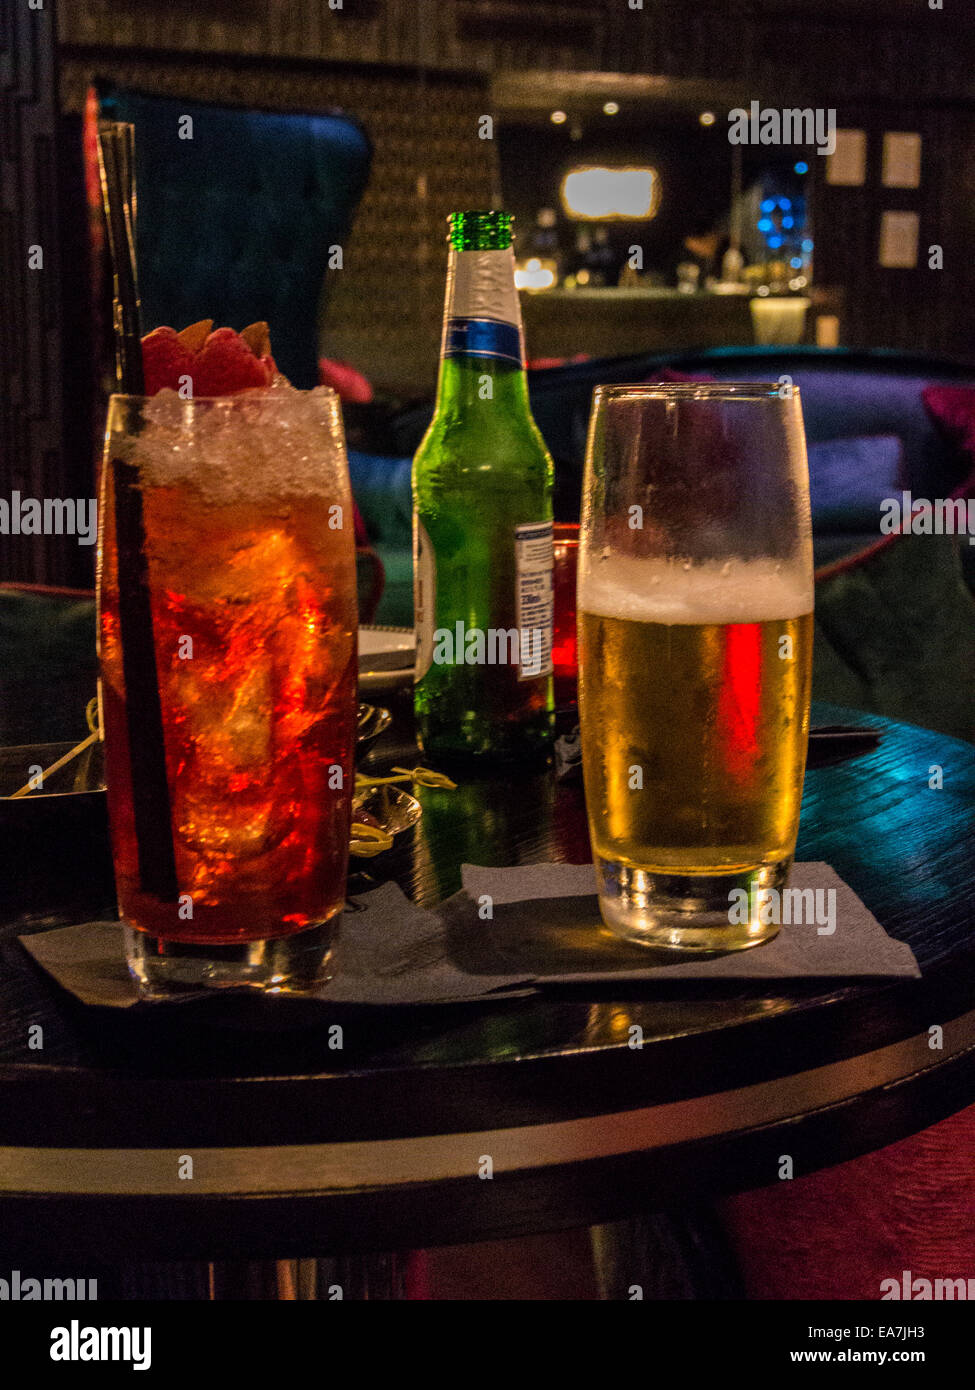 Des cocktails en soirée, Close up d'un Cocktail marocain rempli de glace concassée et garni de framboises rempli d'amandes. Banque D'Images